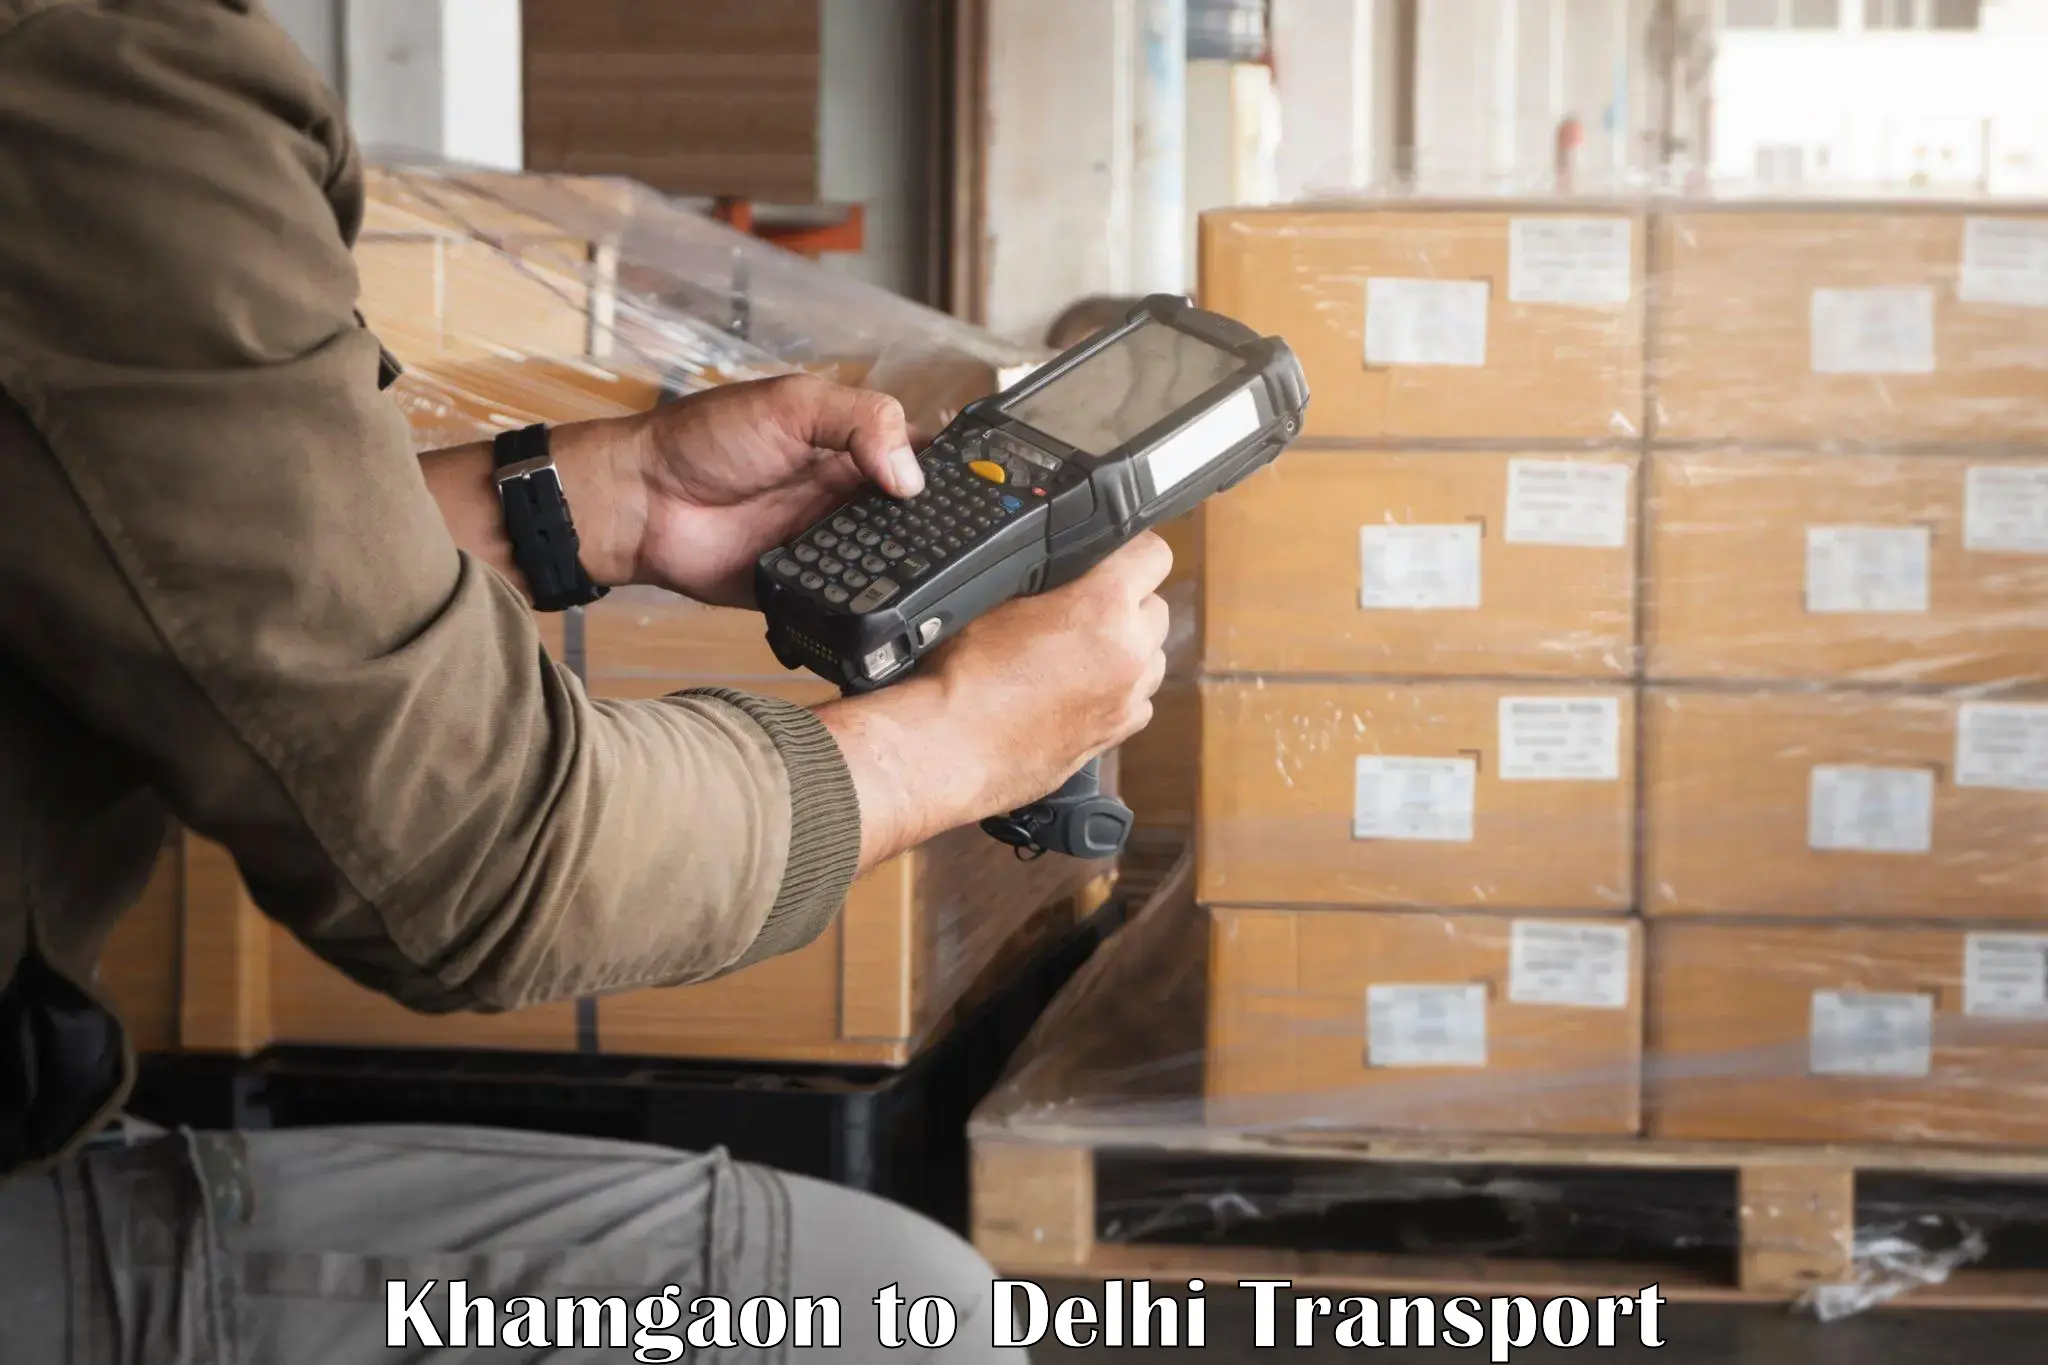 India truck logistics services Khamgaon to NIT Delhi